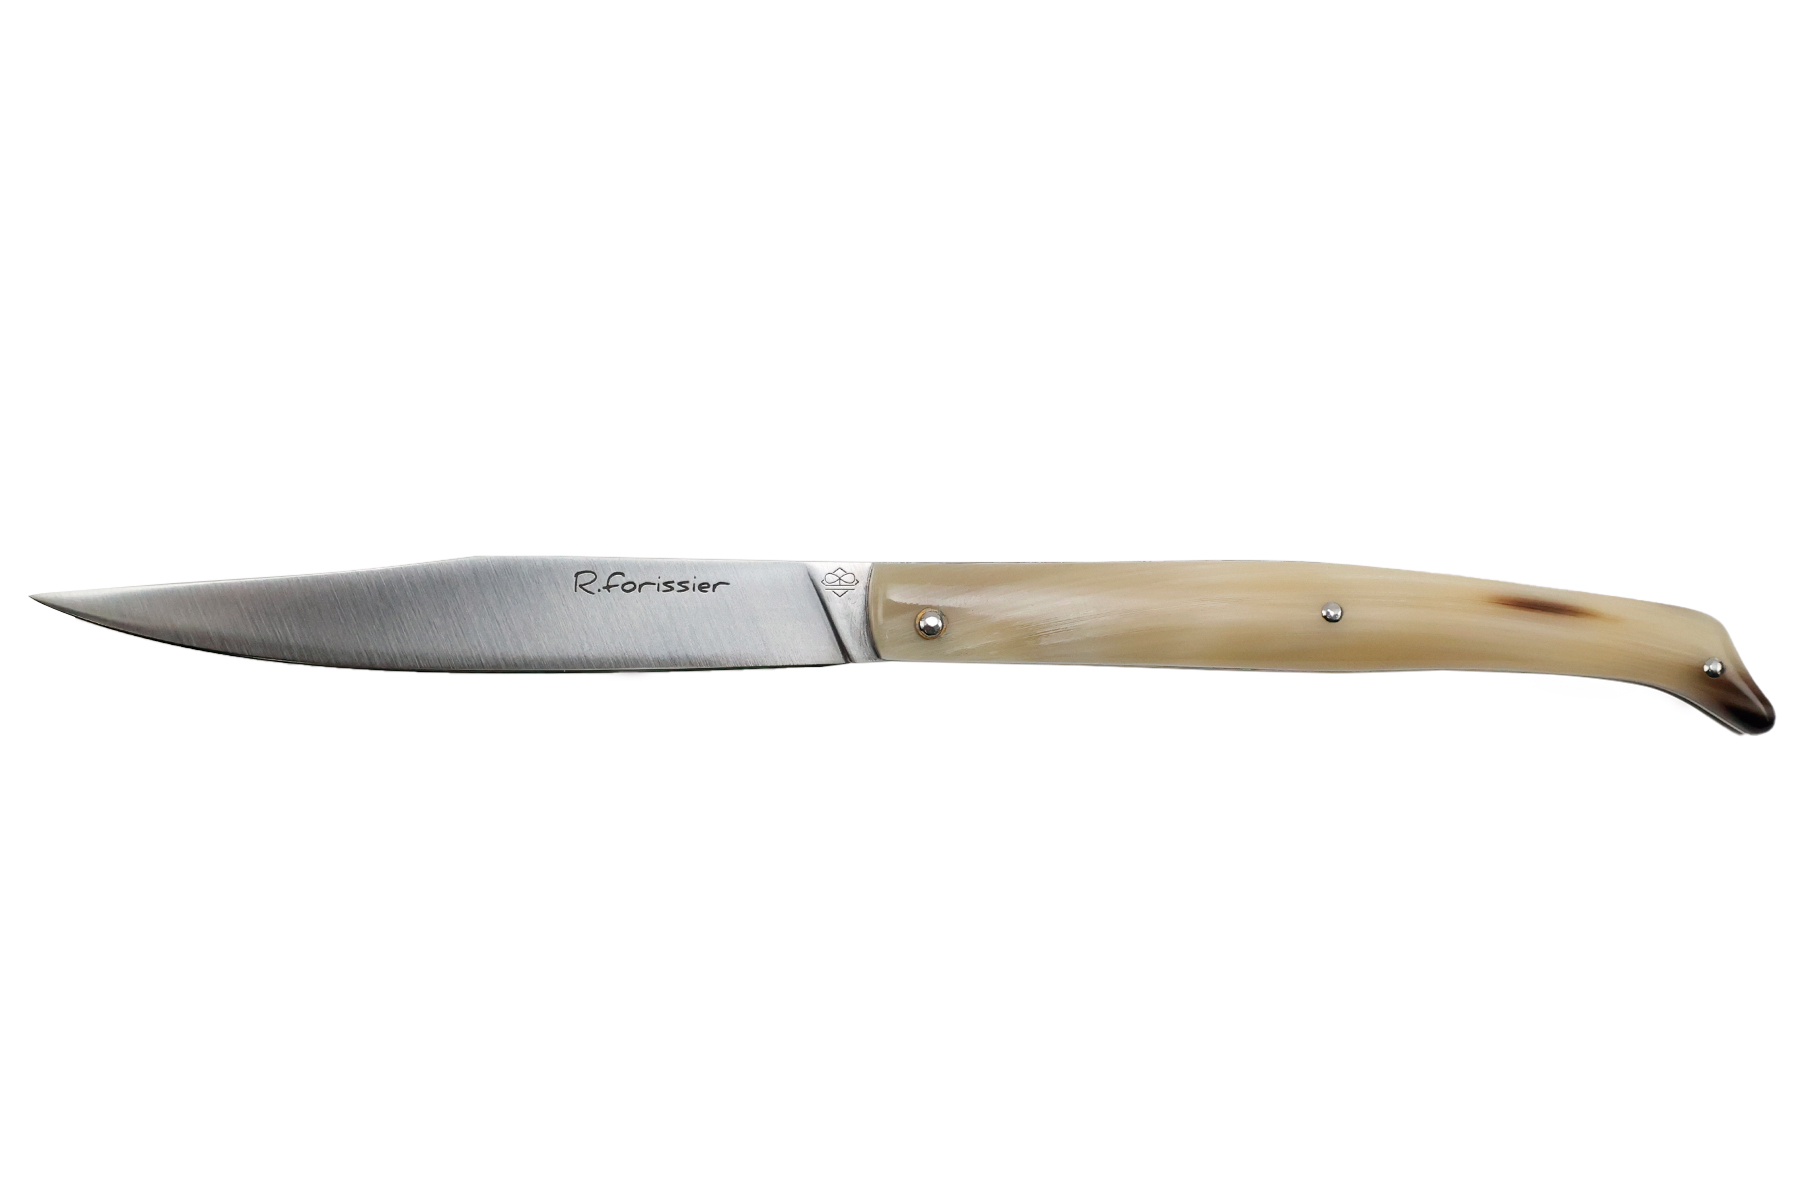 Couteau pliant de Robin Forissier modèle Le Chiloé - corne de zébu